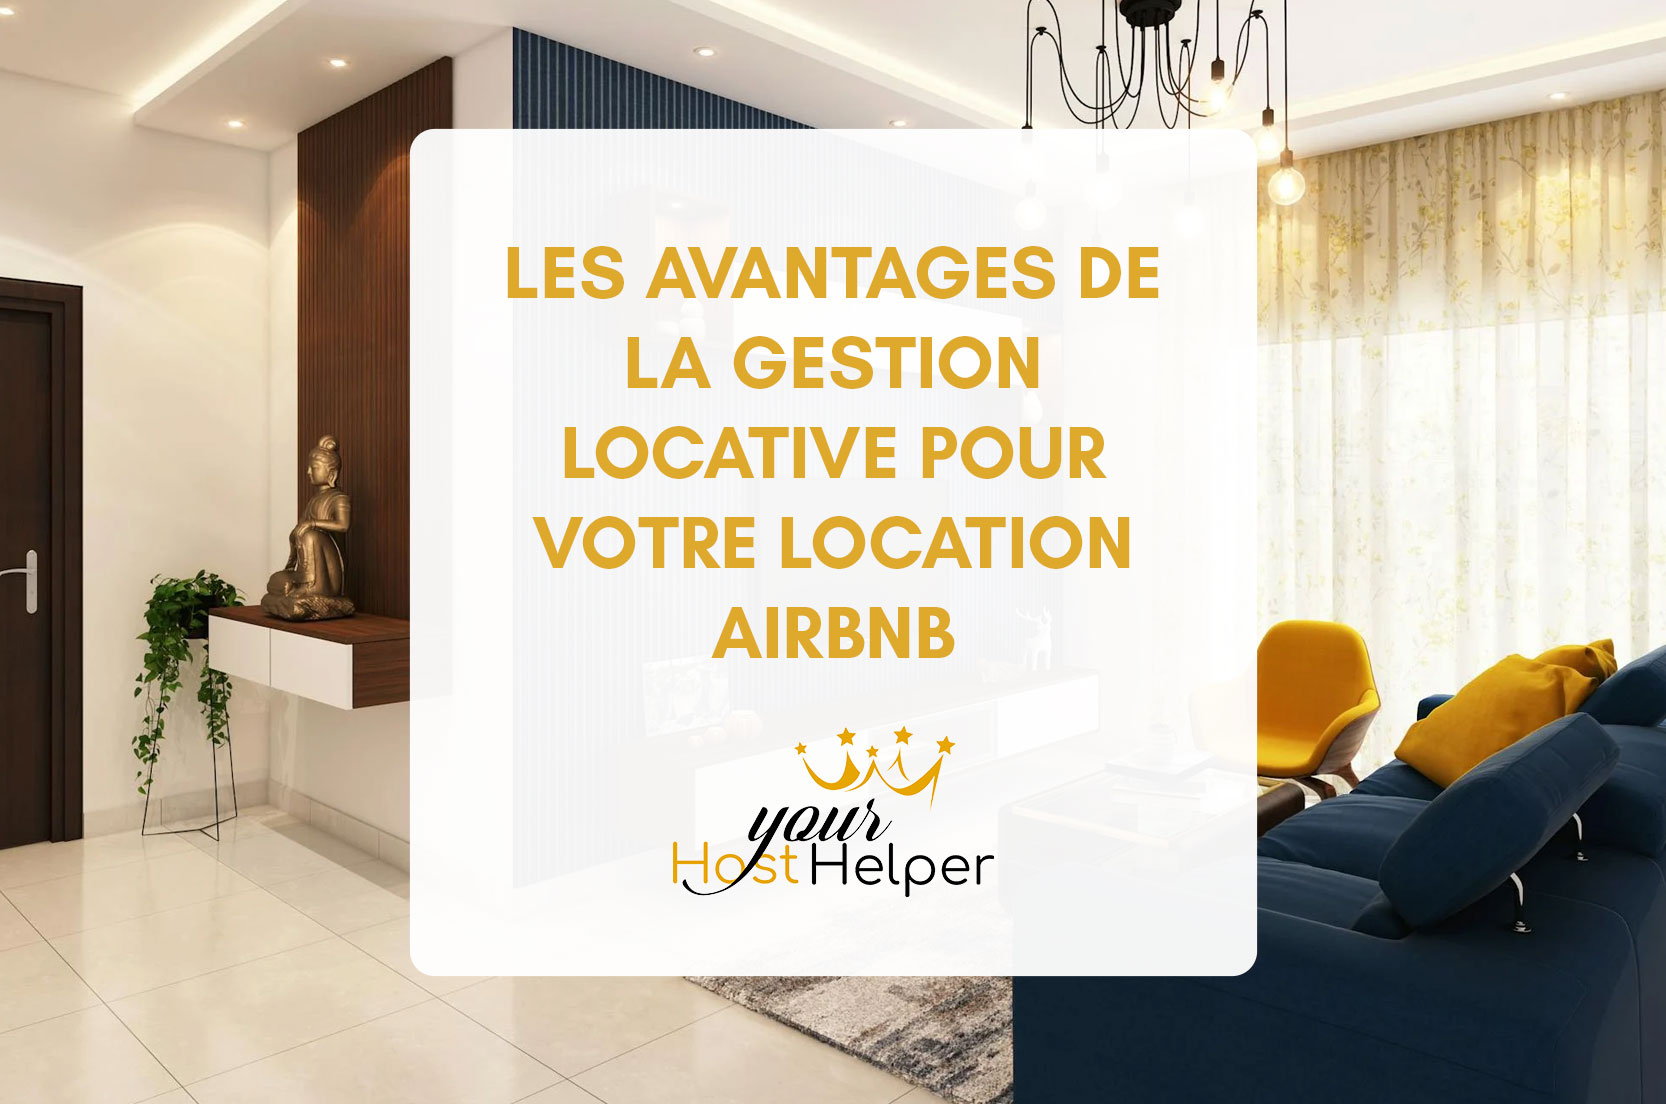 You are currently viewing Les avantages de la gestion locative pour votre location Airbnb